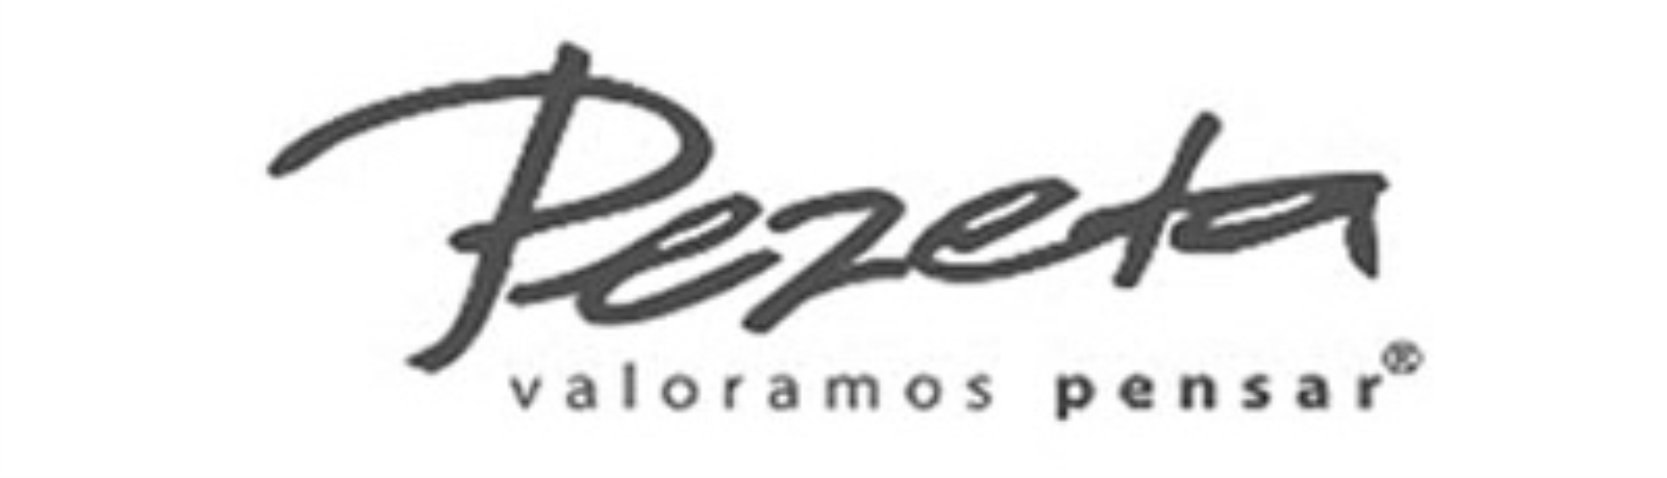 Logo-Pezeta Publicidad